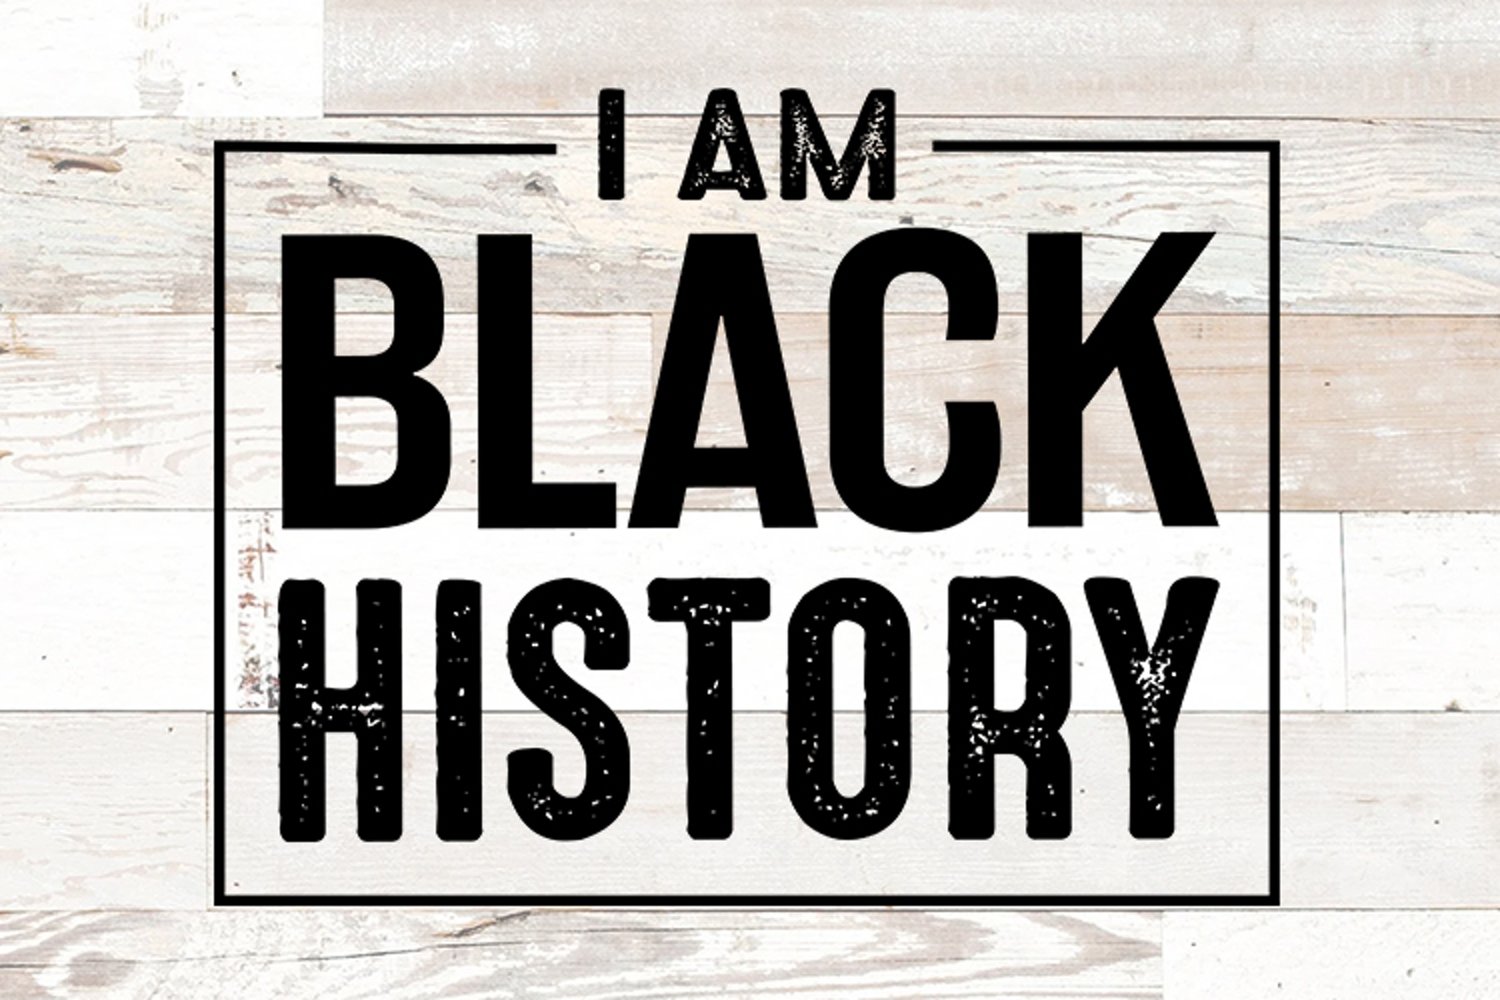 I am black history.